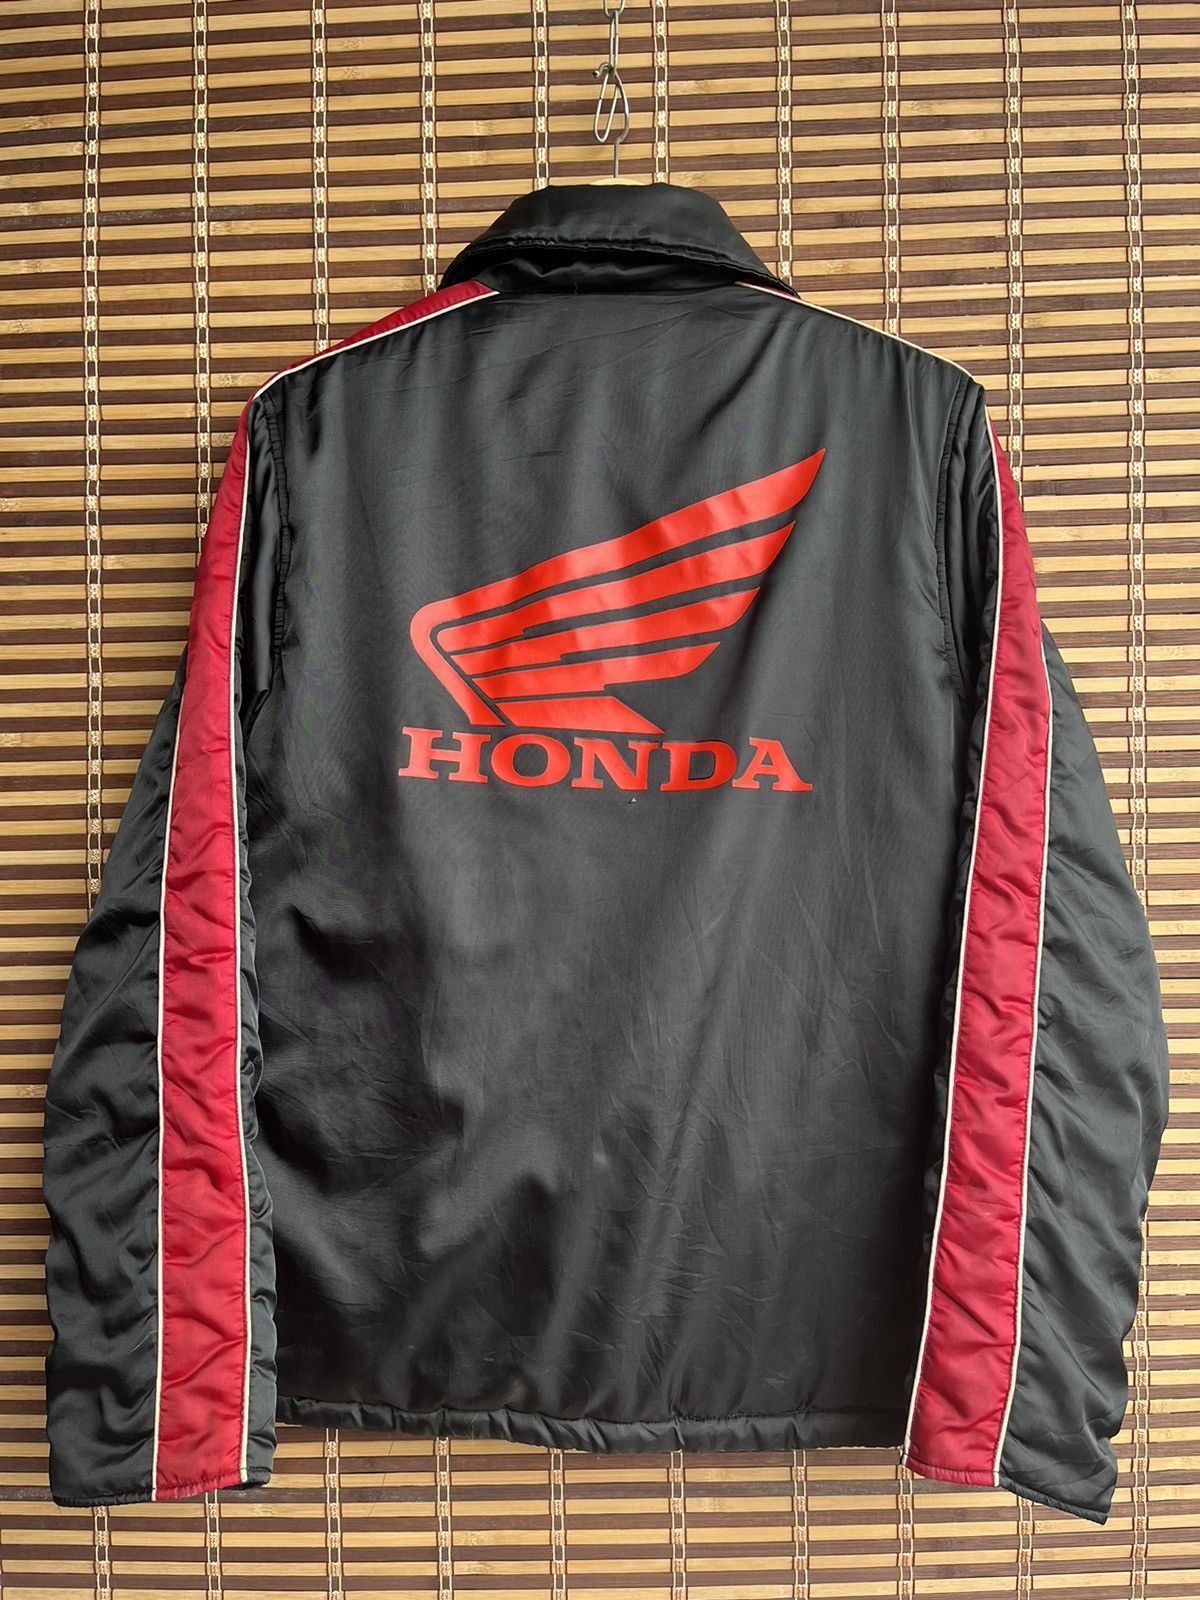 Vintage Carrier With Honda Logo Light Sweater Jacket Japan - 21